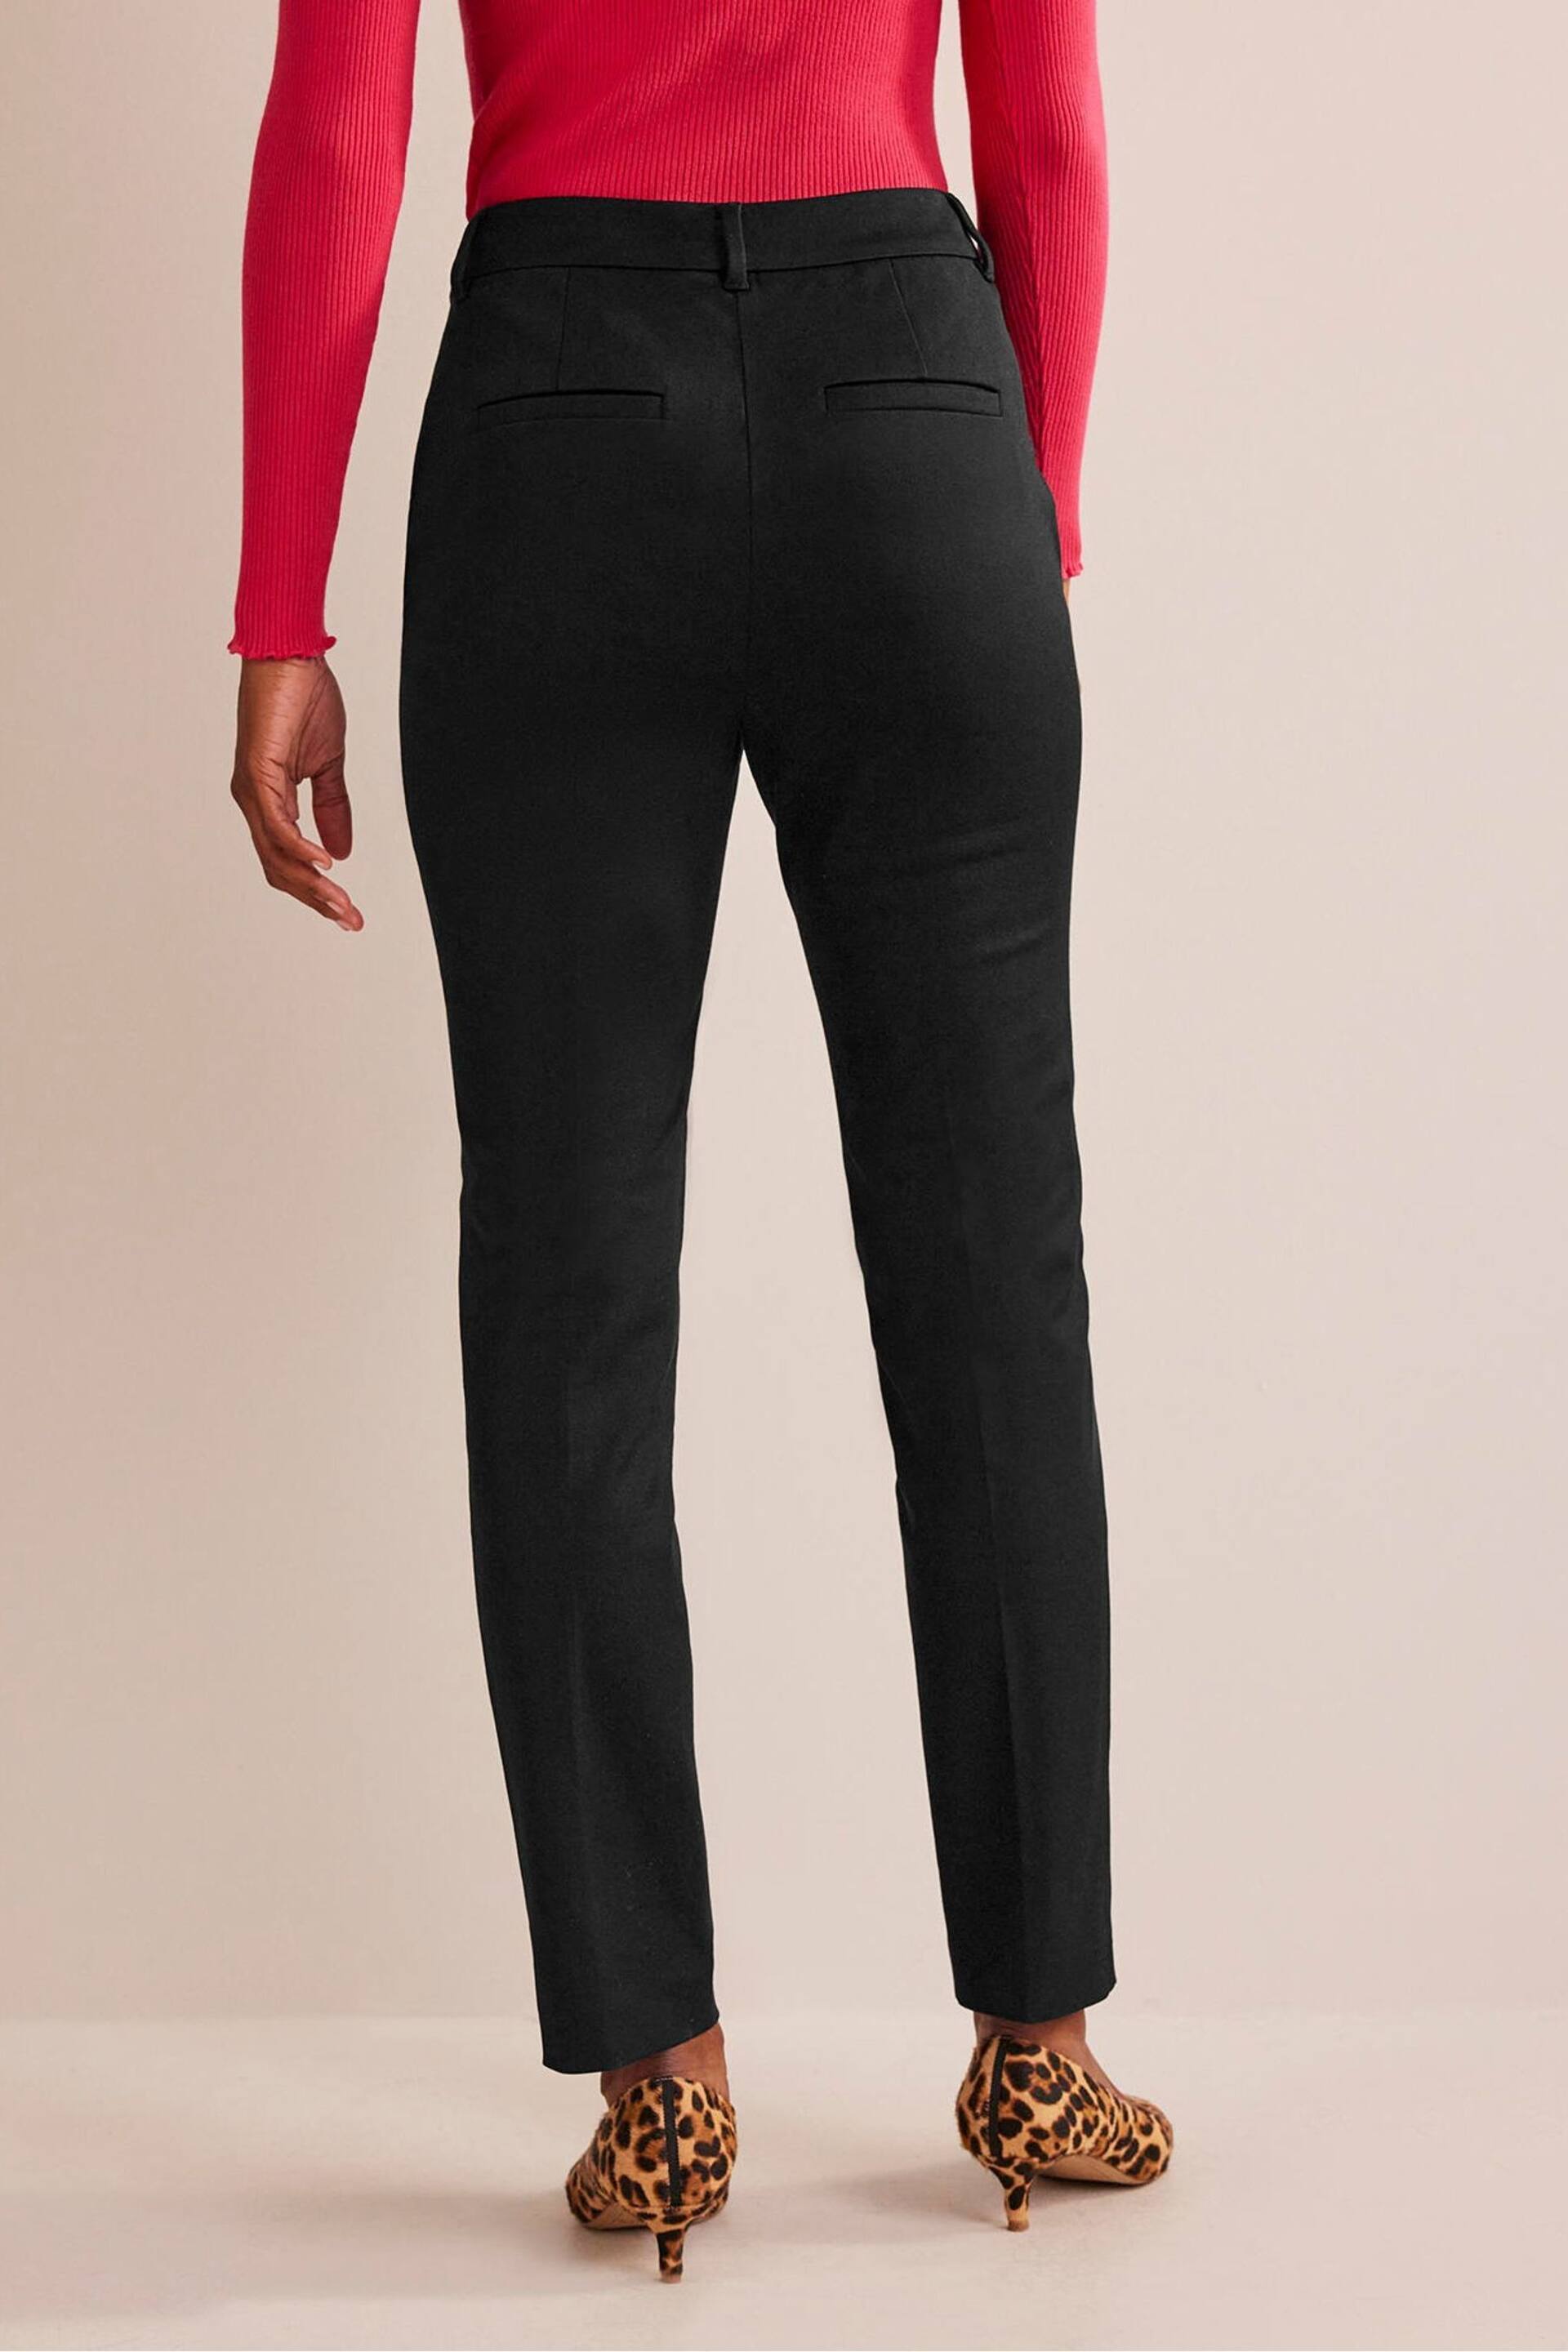 Boden Black Chrome Highgate Bi-Stretch Trousers - Image 2 of 6